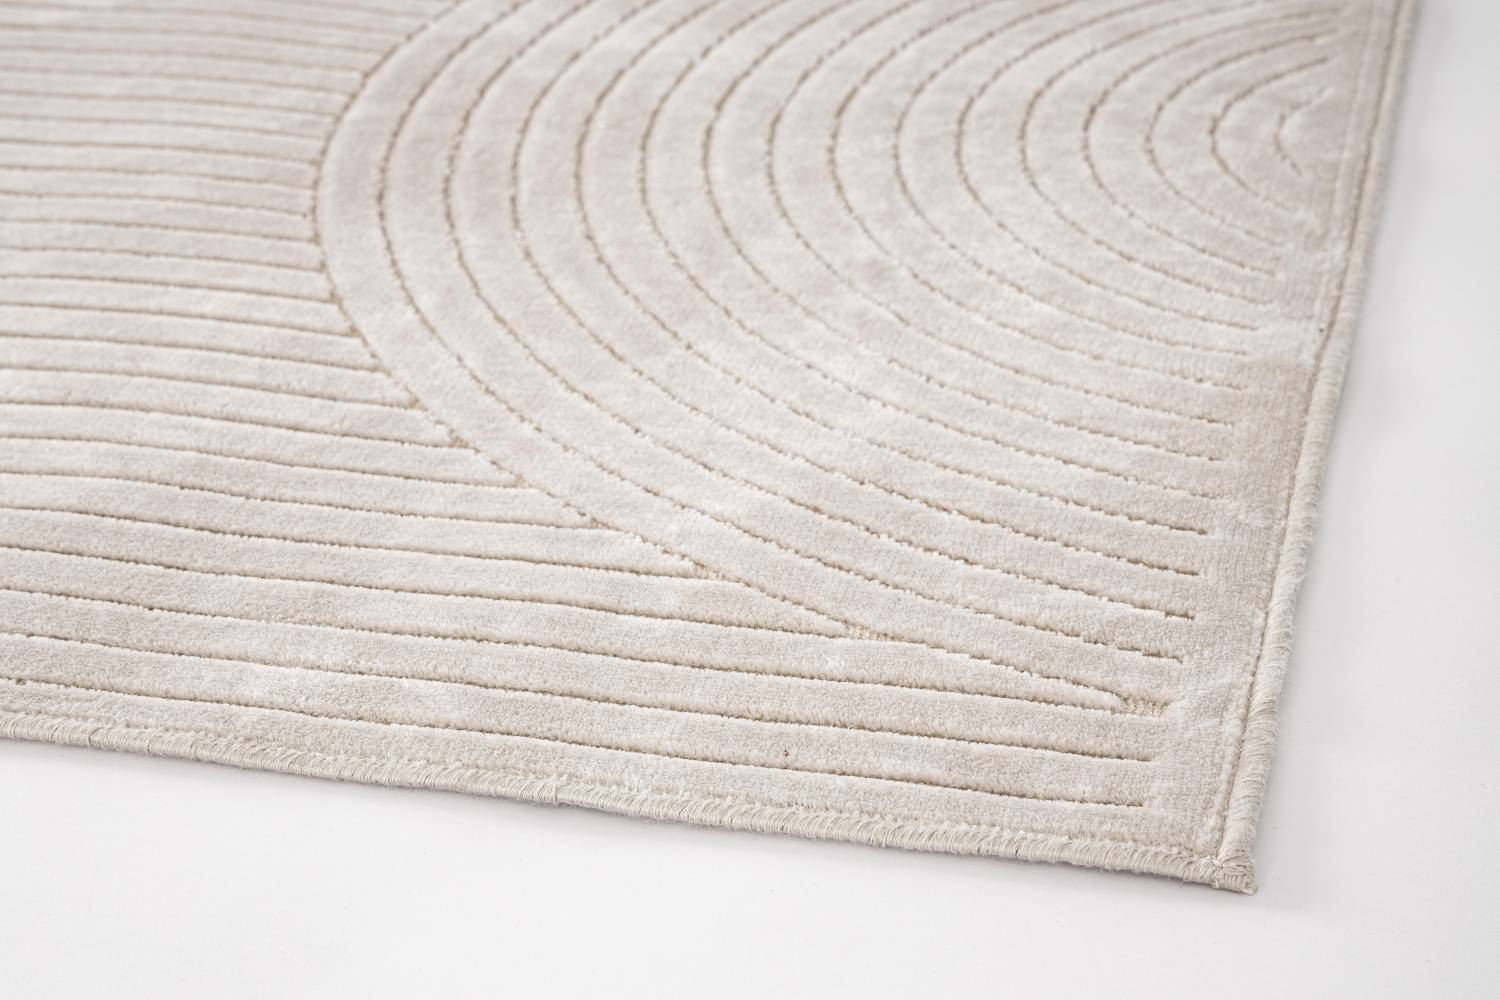 Der Teppich Klab überzeugt mit seinem modernen Design. Gefertigt wurde die Vorderseite aus Viskose, Chenille und Fleece, die Rückseite ist aus Latex. Der Teppich besitzt eine beige Farbton und die Maße von 160x230 cm.